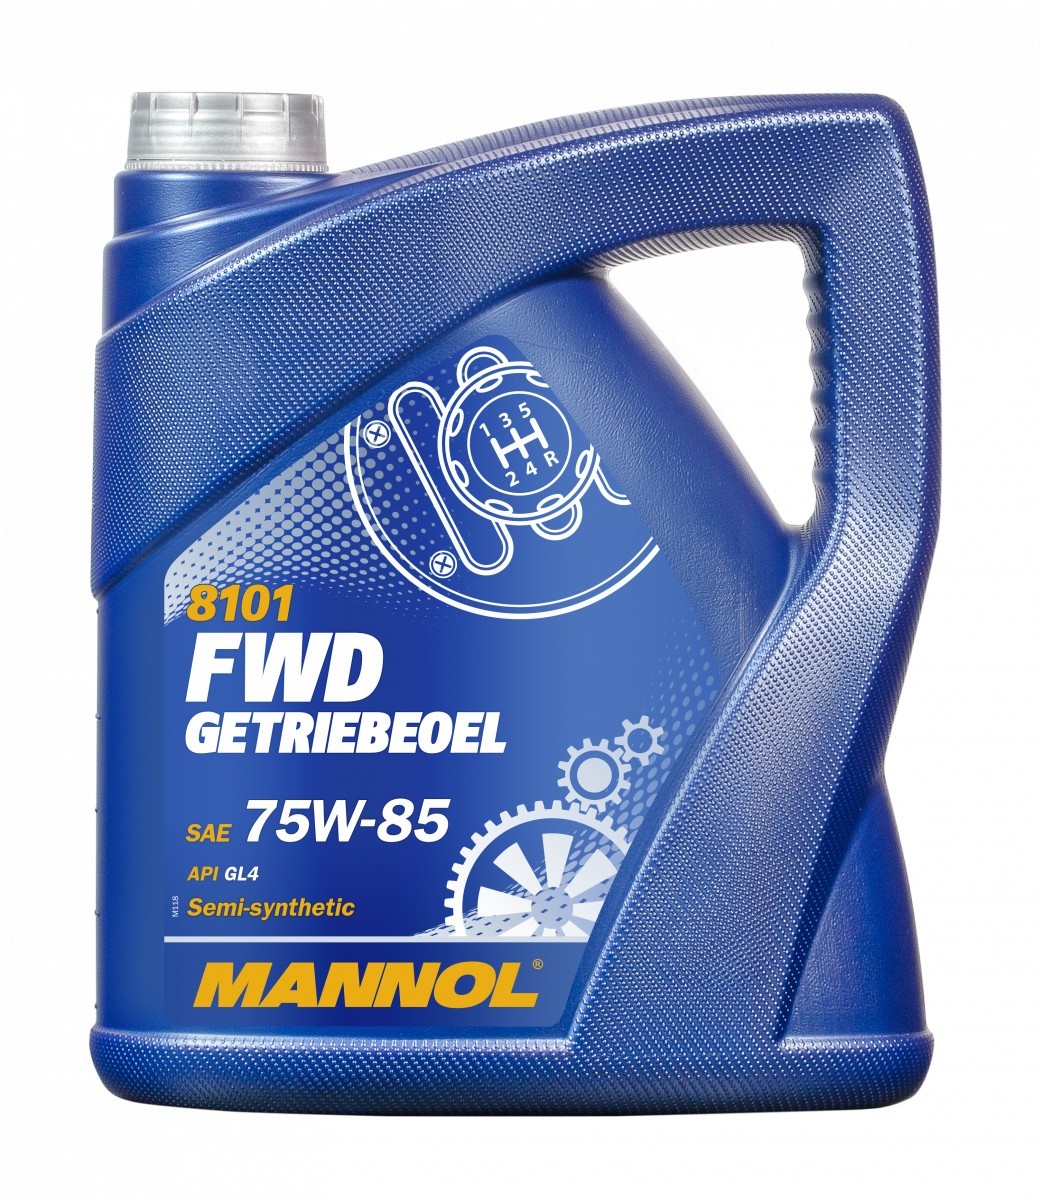 Трансмиссионное масло Mannol FWD Getriebeoel 75W-85 8101 4L